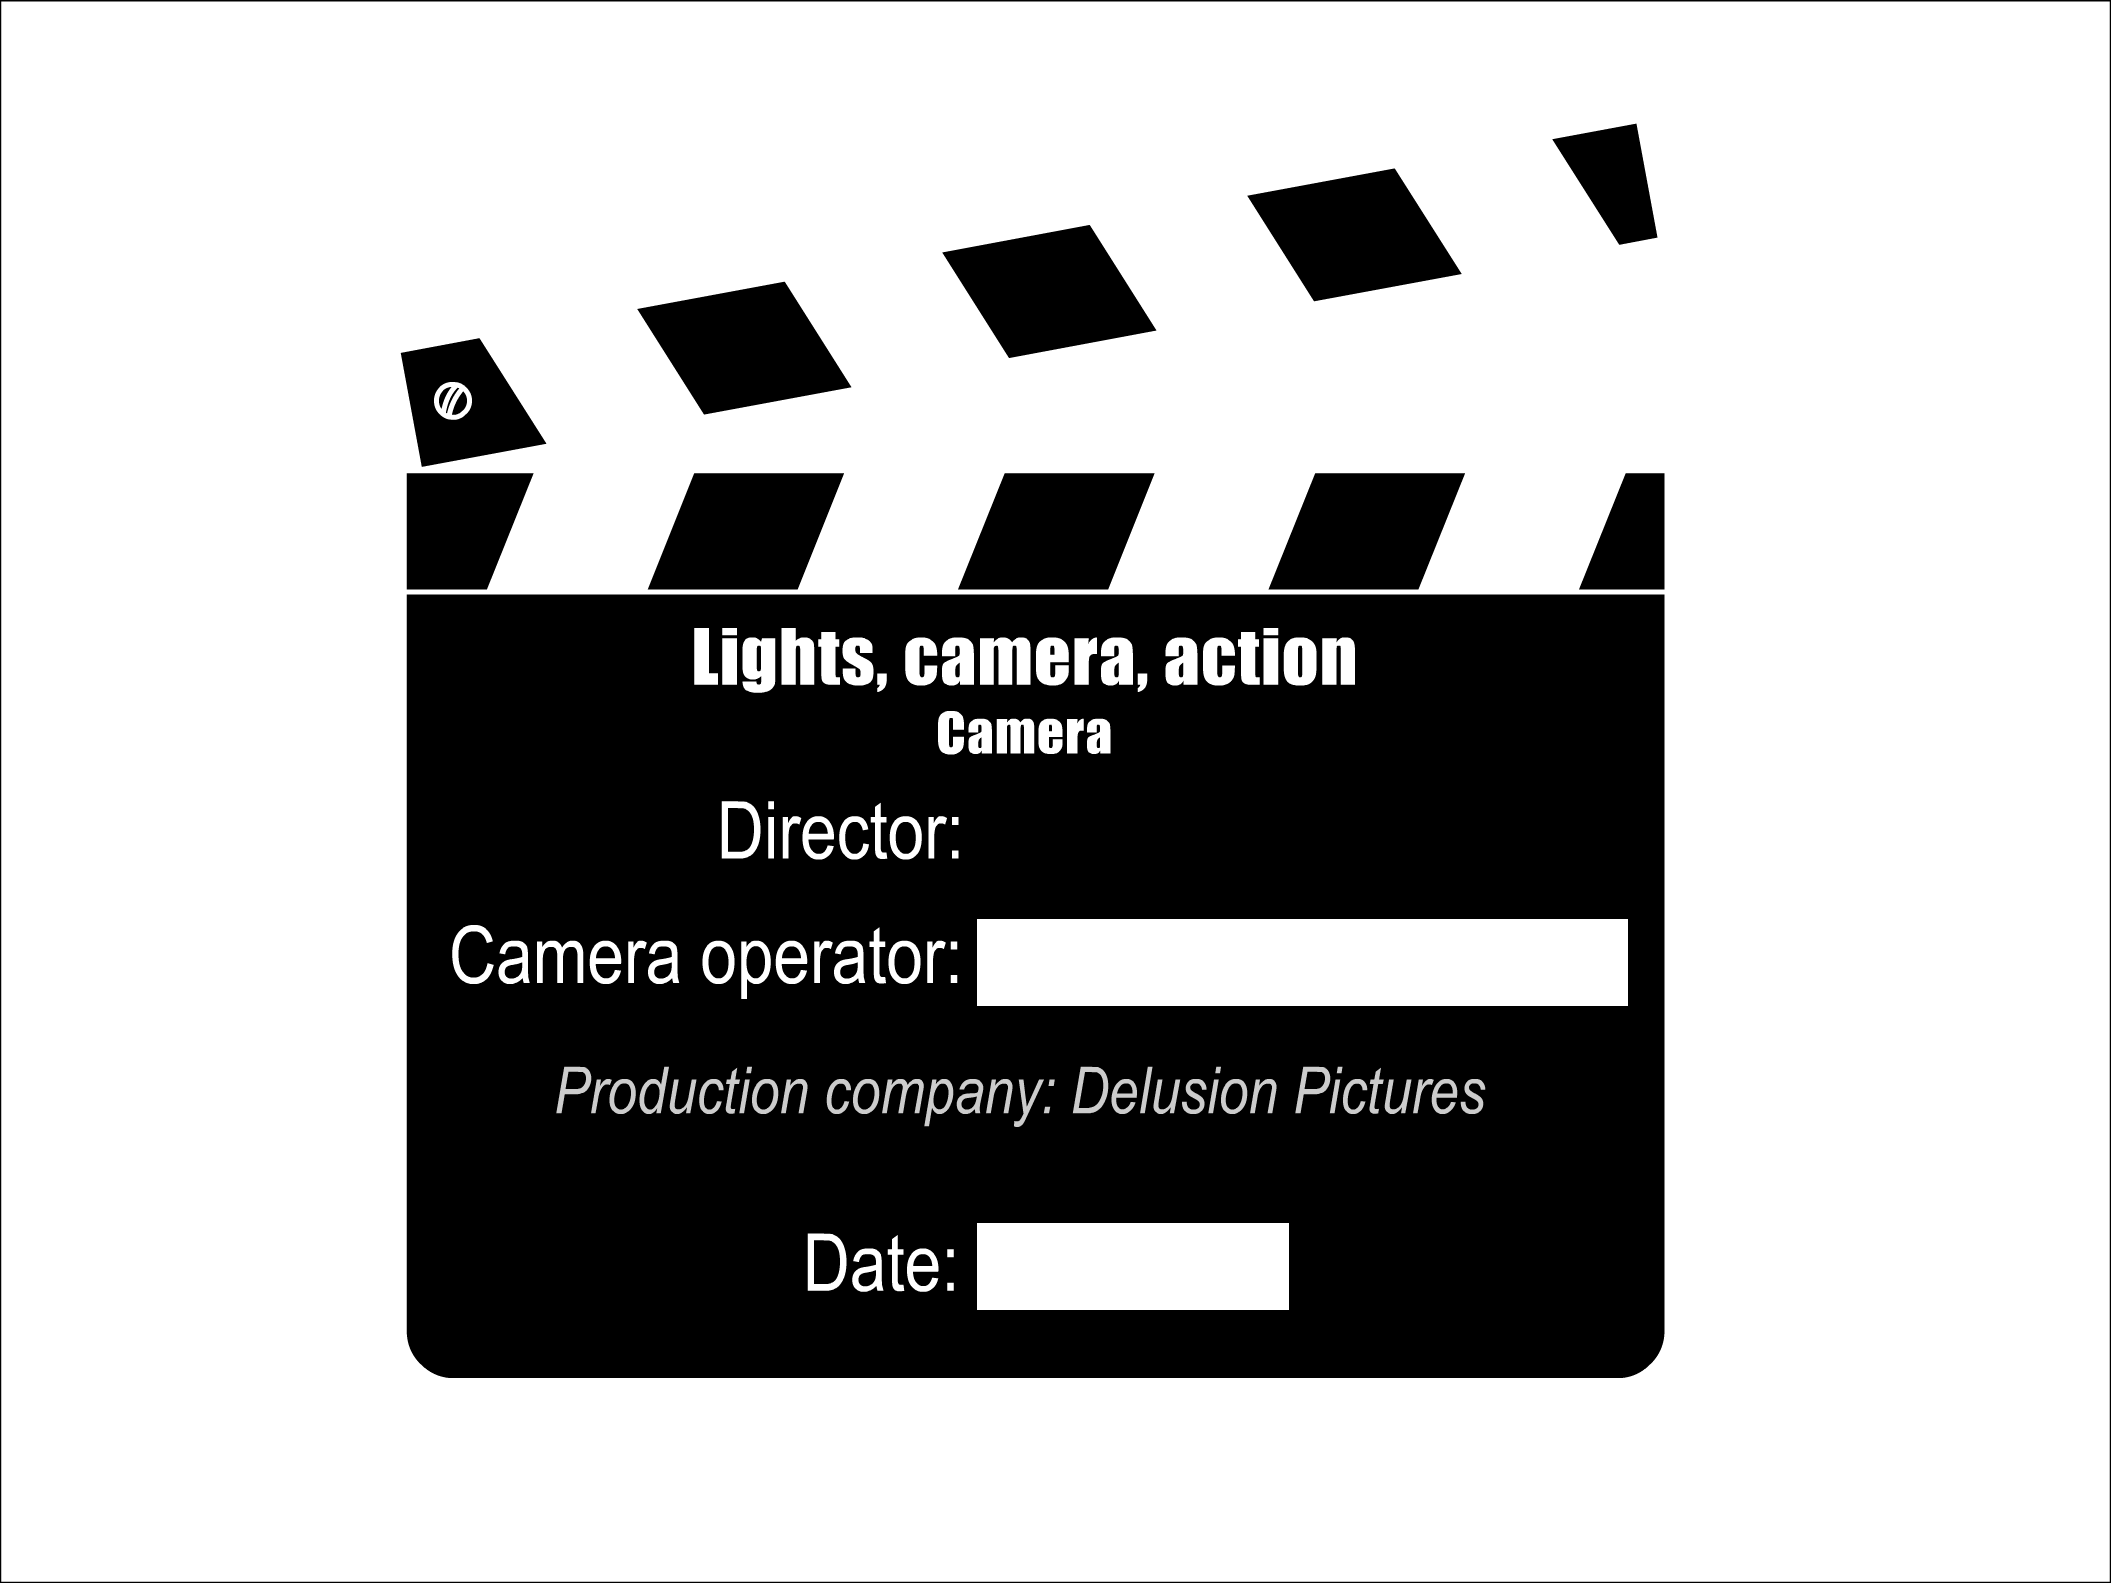 Lights, camera, action: camera